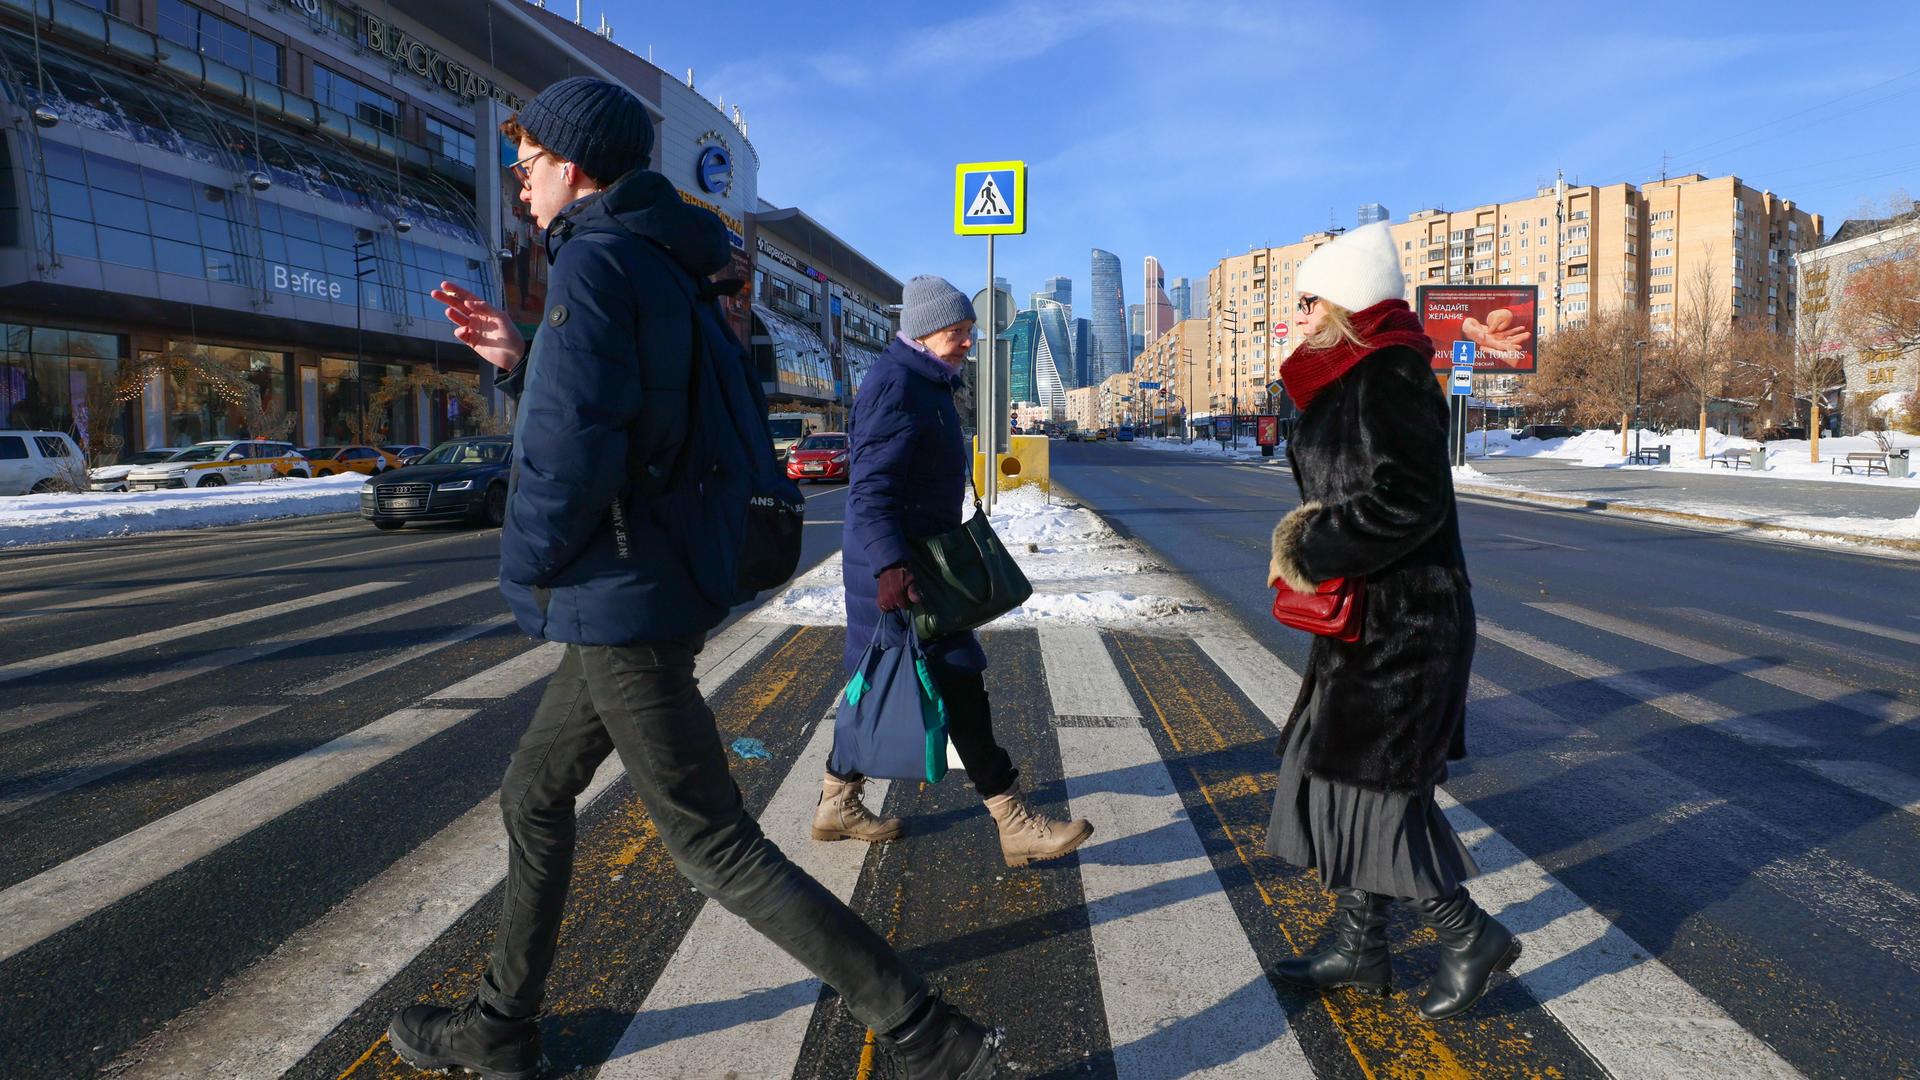 Ein junger Mann läuft rauchend über den Zebrastreifen einer großen Straße, hinter ihm eine Frau mit Brille und Handtasche. In die andere Richtung läuft eine ältere Frau mit zwei Umhängetaschen.